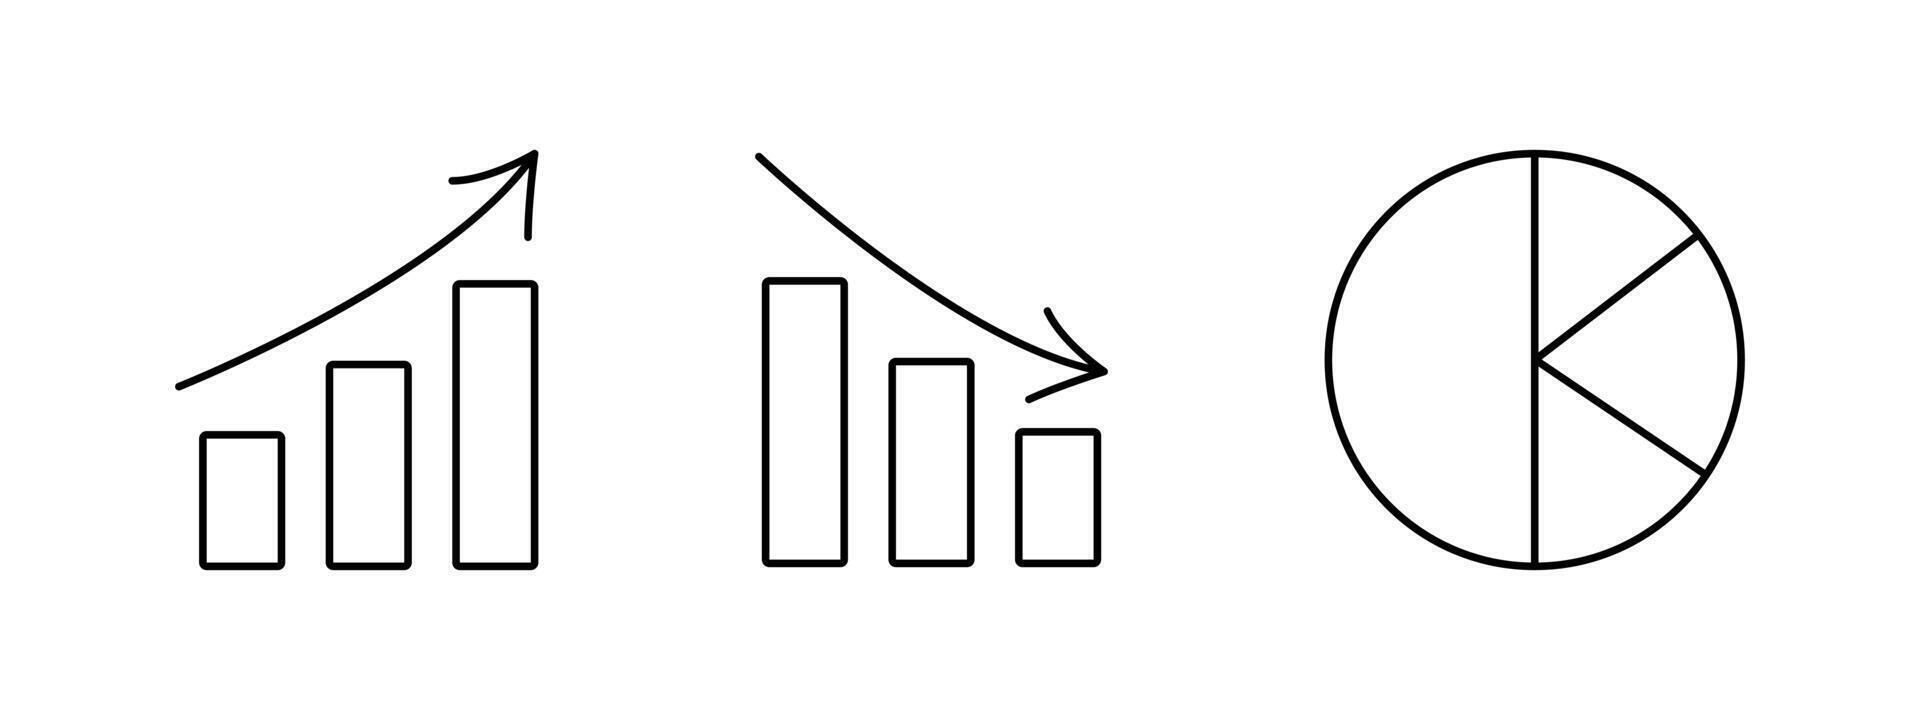 tarta, línea cartas grafico, diagrama. Estadísticas contorno iconos crecimiento tasa. datos visualización. subir y otoño de finanzas, cepo. gráfico representación de datos. flechas contorno ilustración. vector